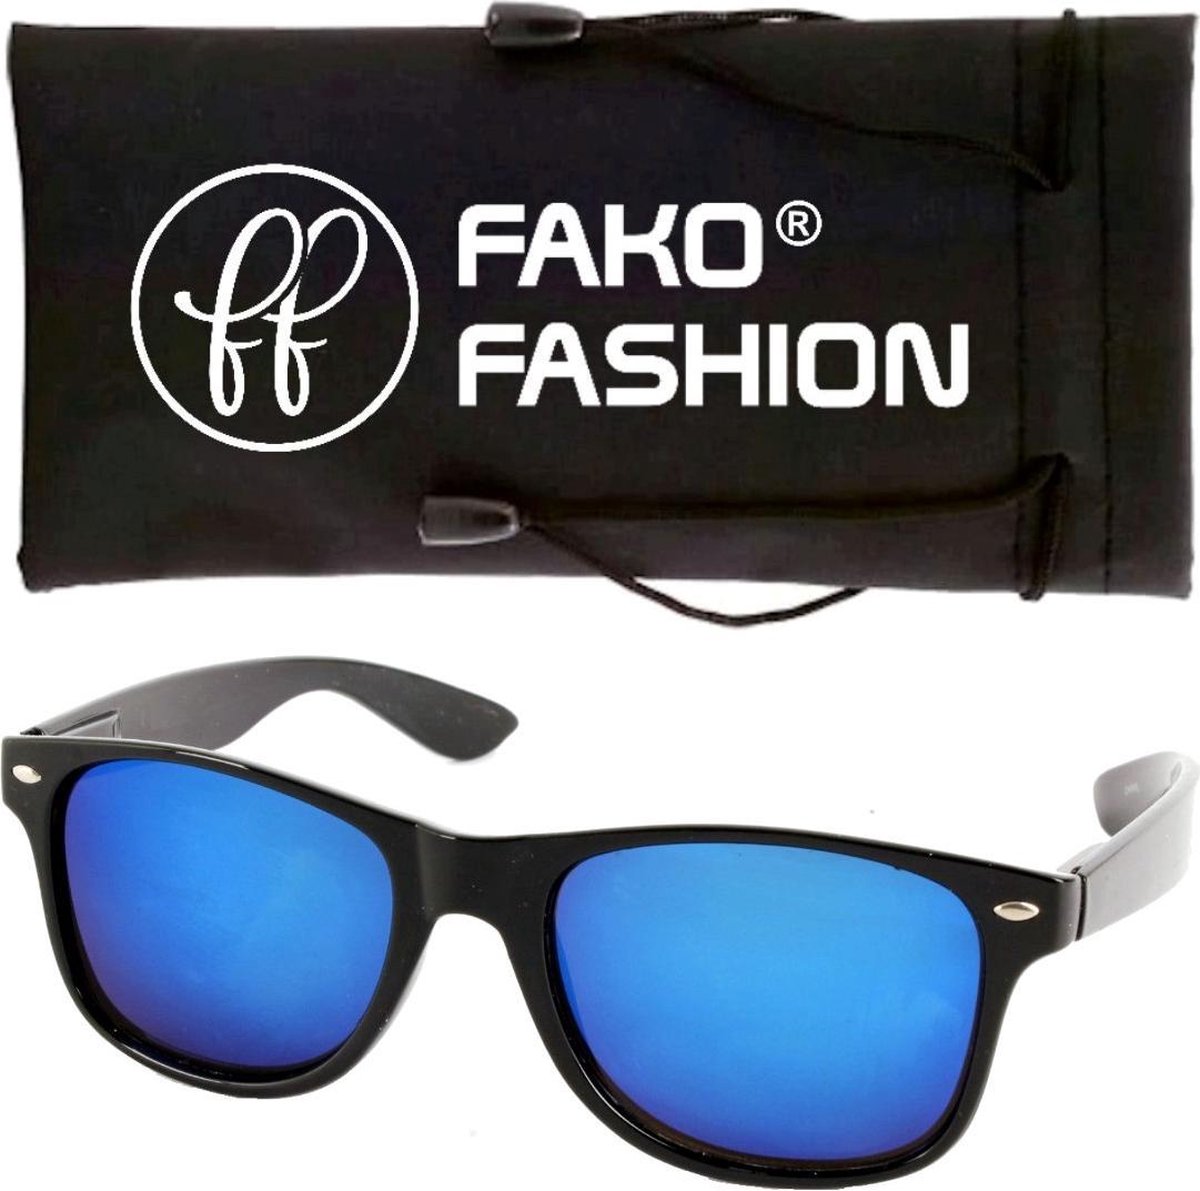 Fako Fashion® - Zonnebril - Zwart - Spiegel Blauw